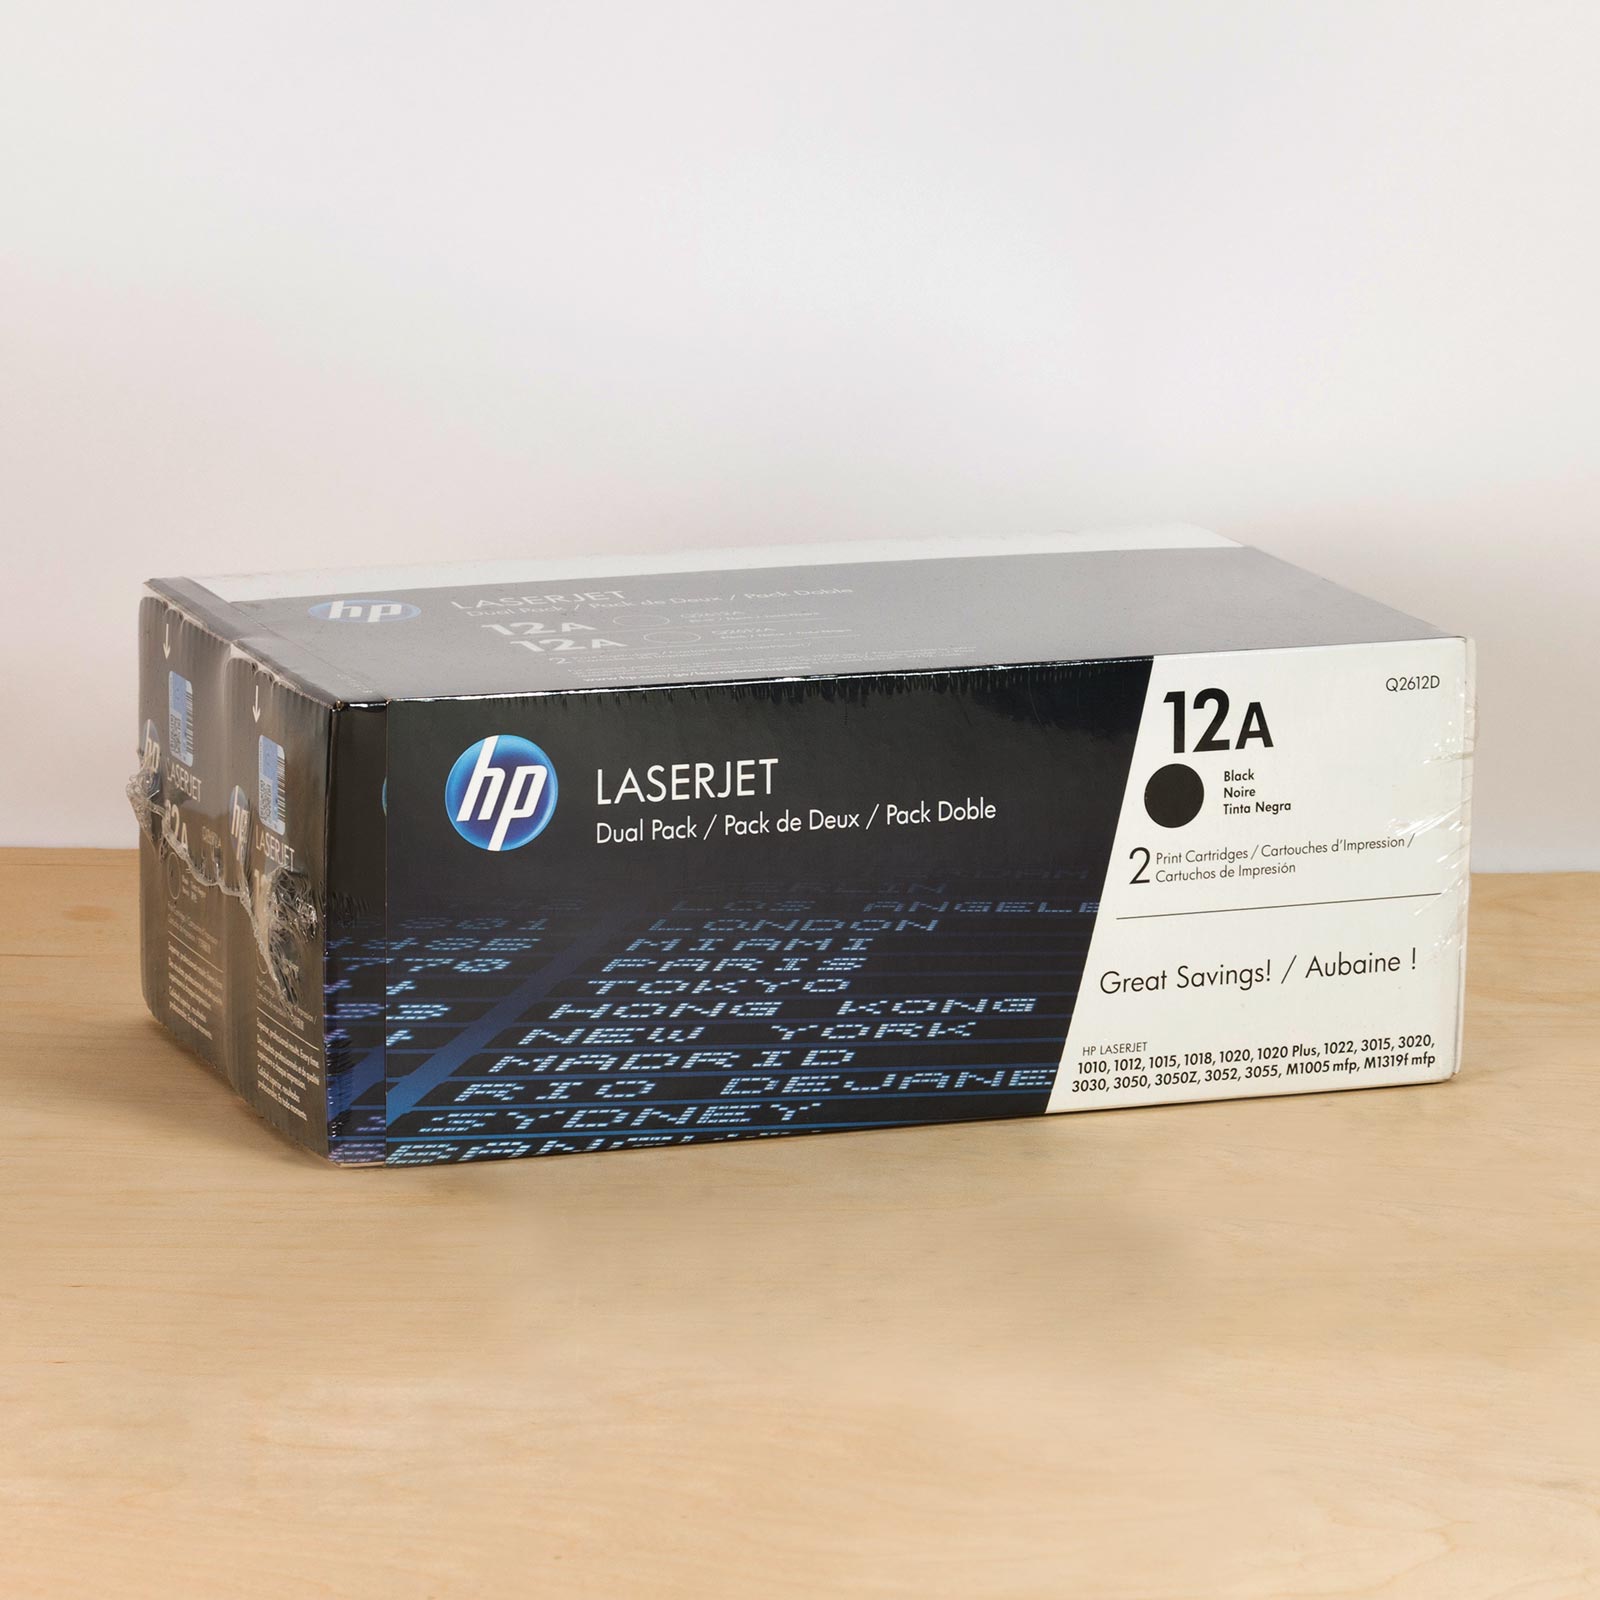 Briljant Anoi voor eeuwig HP LaserJet 3050 OEM Toner Cartridge 2Pack - 2,000 Pages Ea.